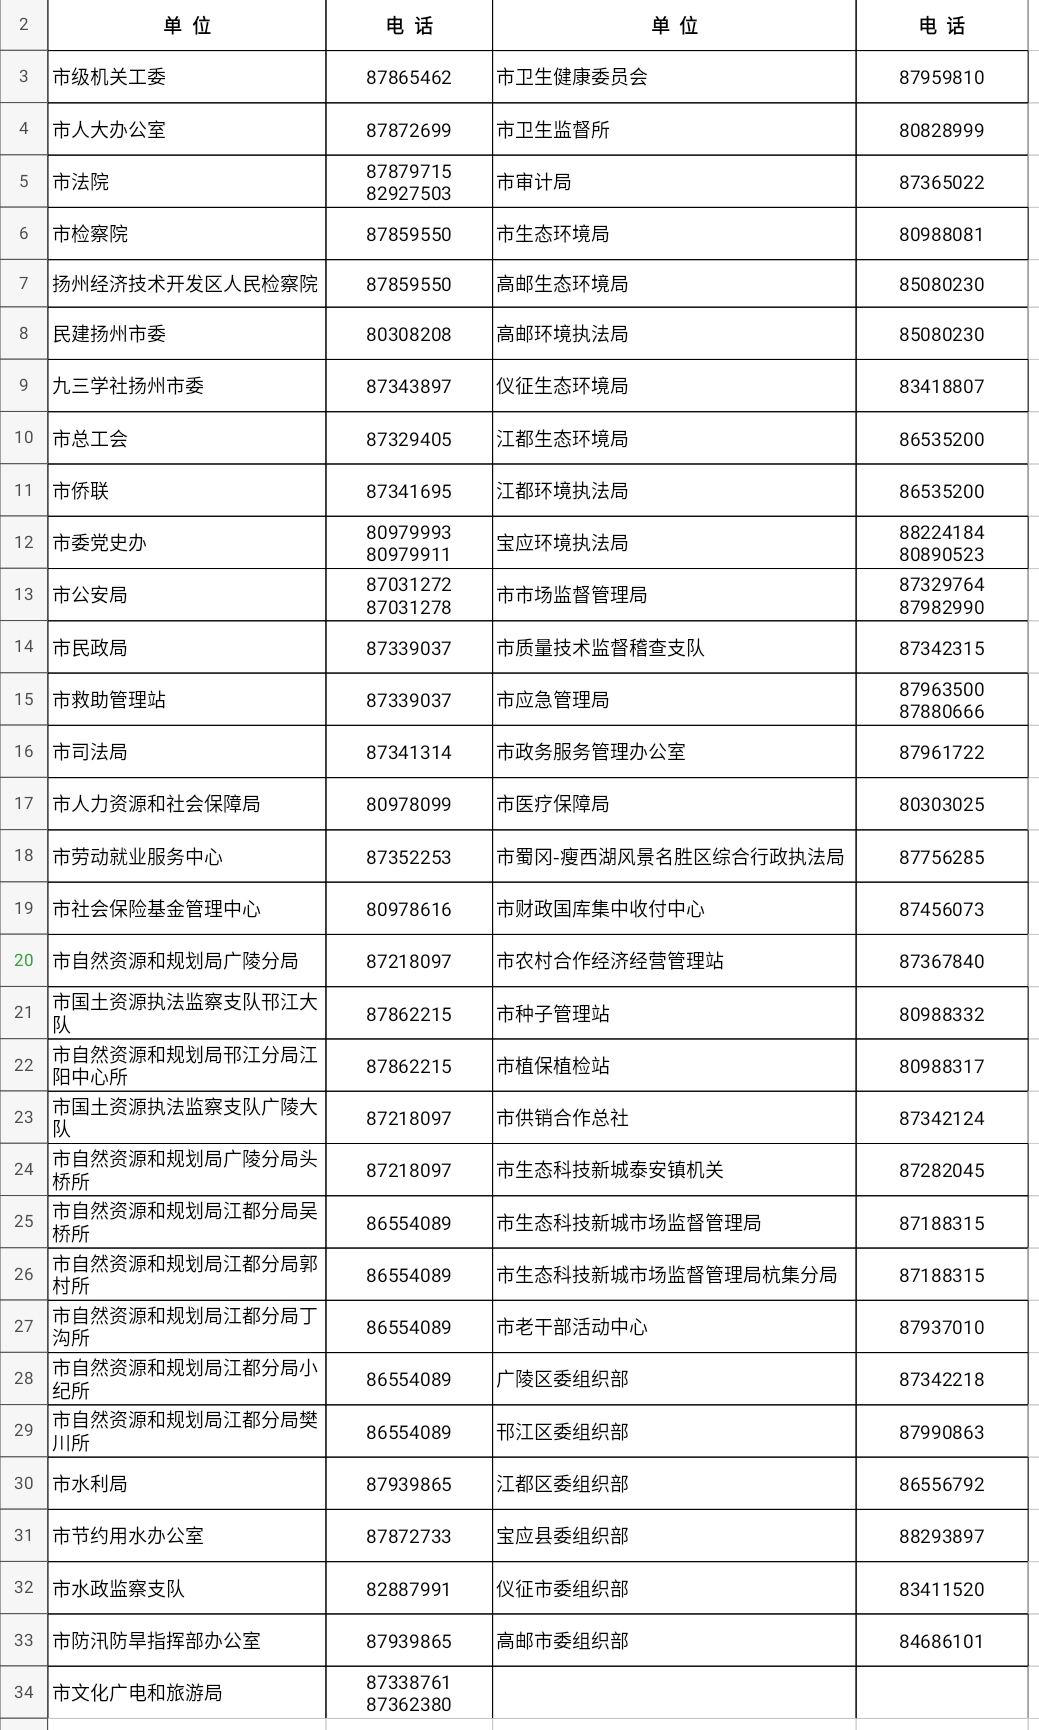 扬州市2020年考试录用公务员和参公管理单位工作人员咨询电话